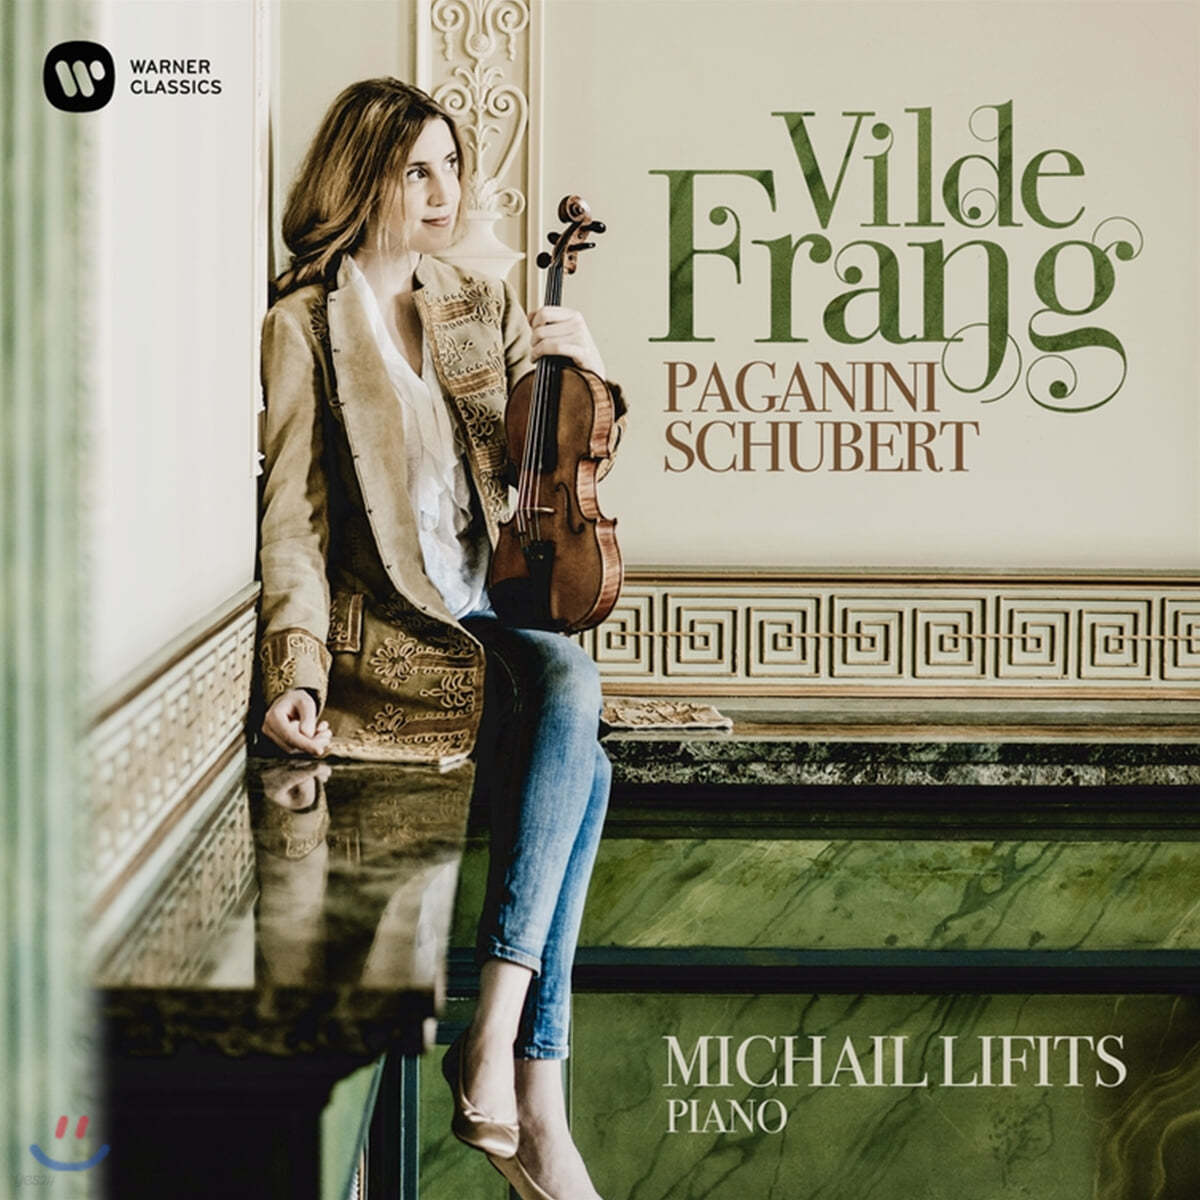 Vilde Frang 파가니니 / 슈베르트 / 슈트라우스 / 그리그: 바이올린 소나타 - 빌데 프랑 (Paganini / Schubert)